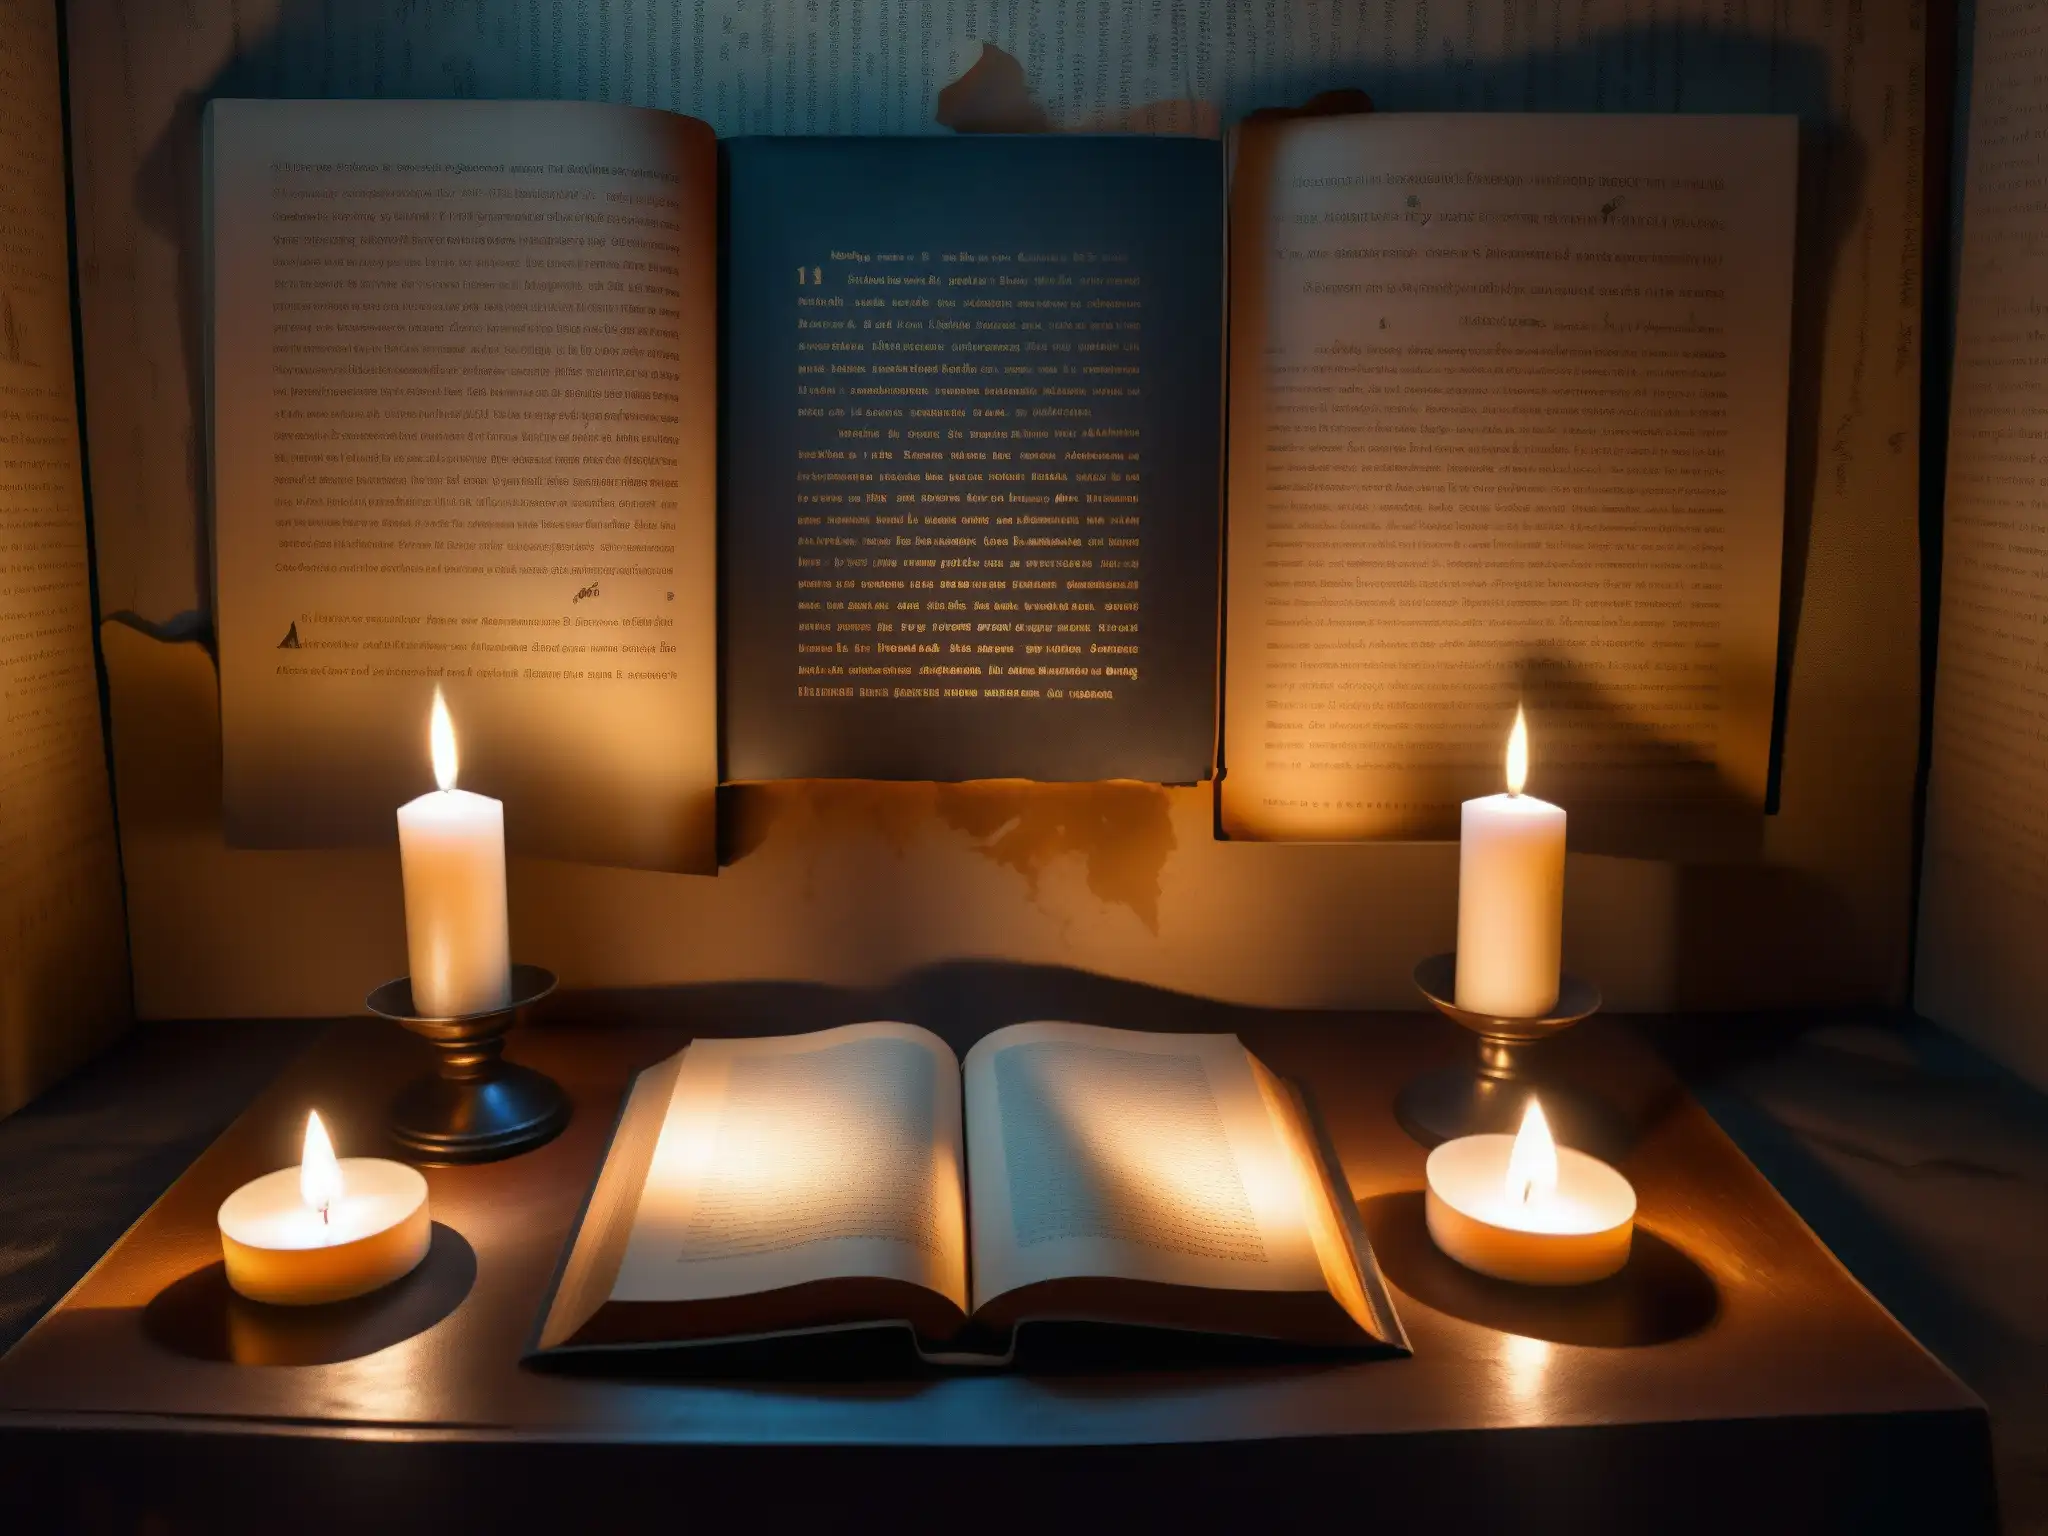 Un oscuro rincón con velas titilantes y un altar improvisado con símbolos crípticos y velas medio quemadas